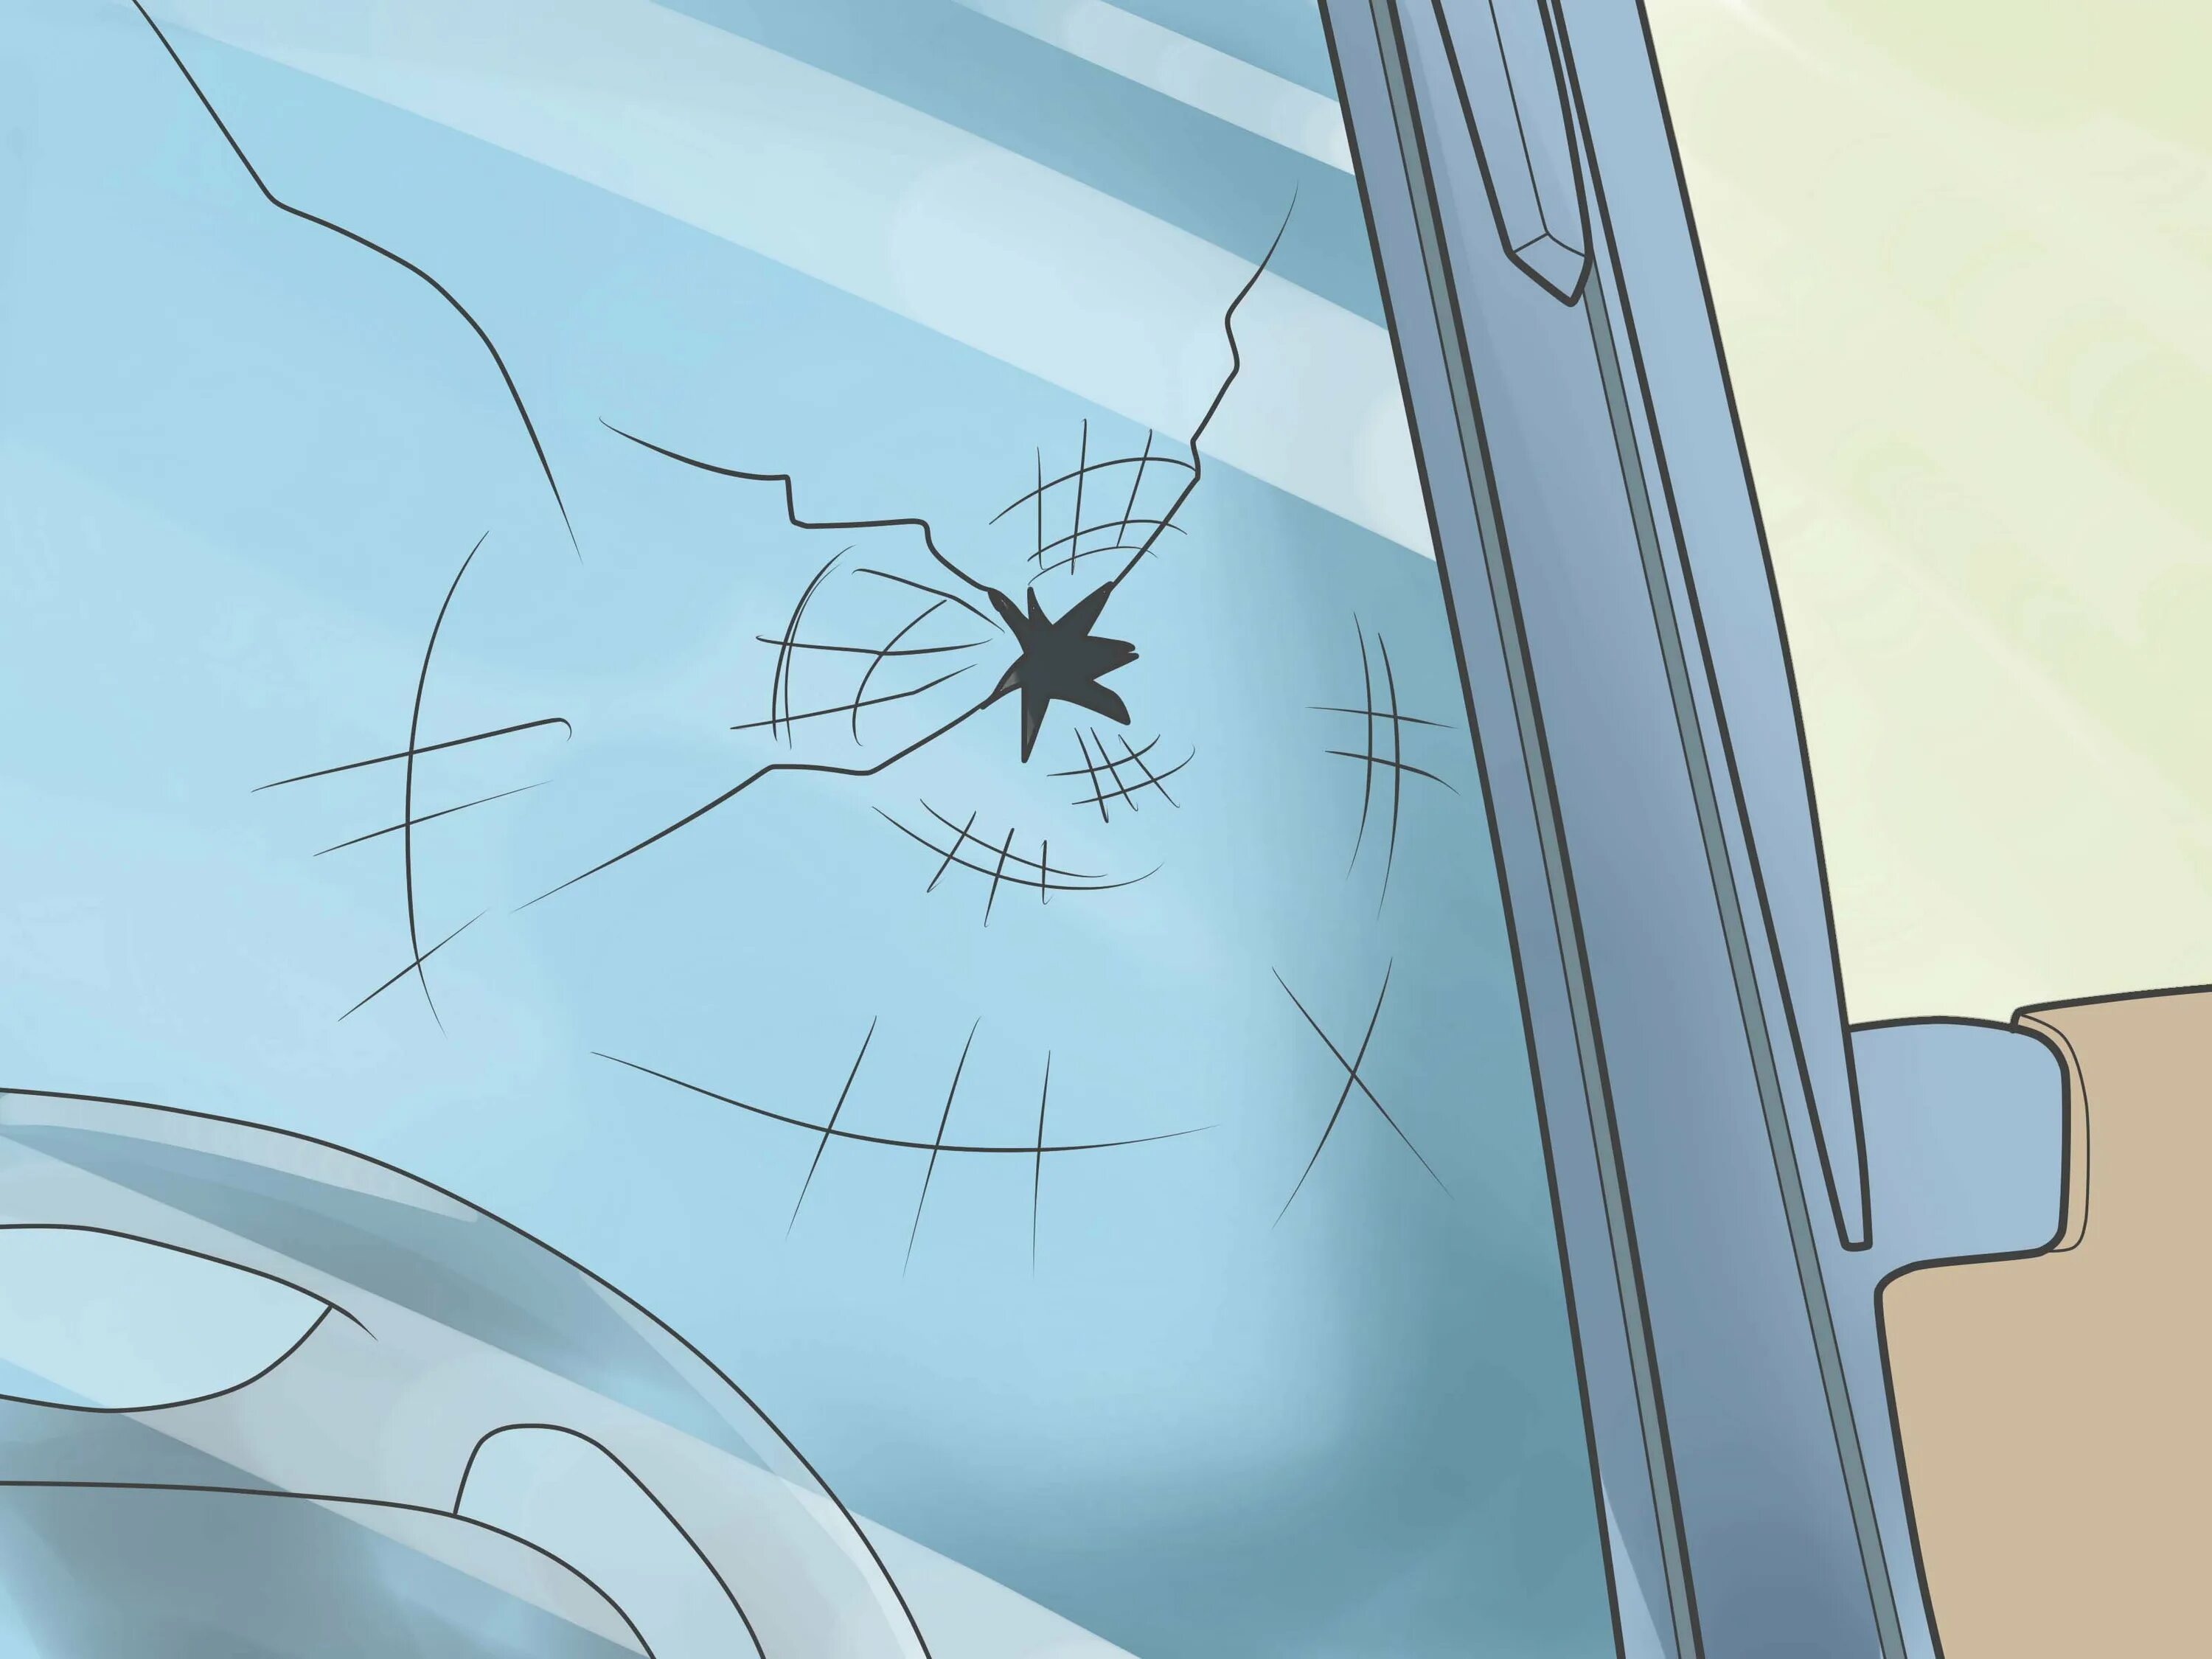 Наклейка трещина. Разбитое стекло. Трещина на лобовом стекле. Разбитое лобовое стекло. Разбитое стекло автомобиля.